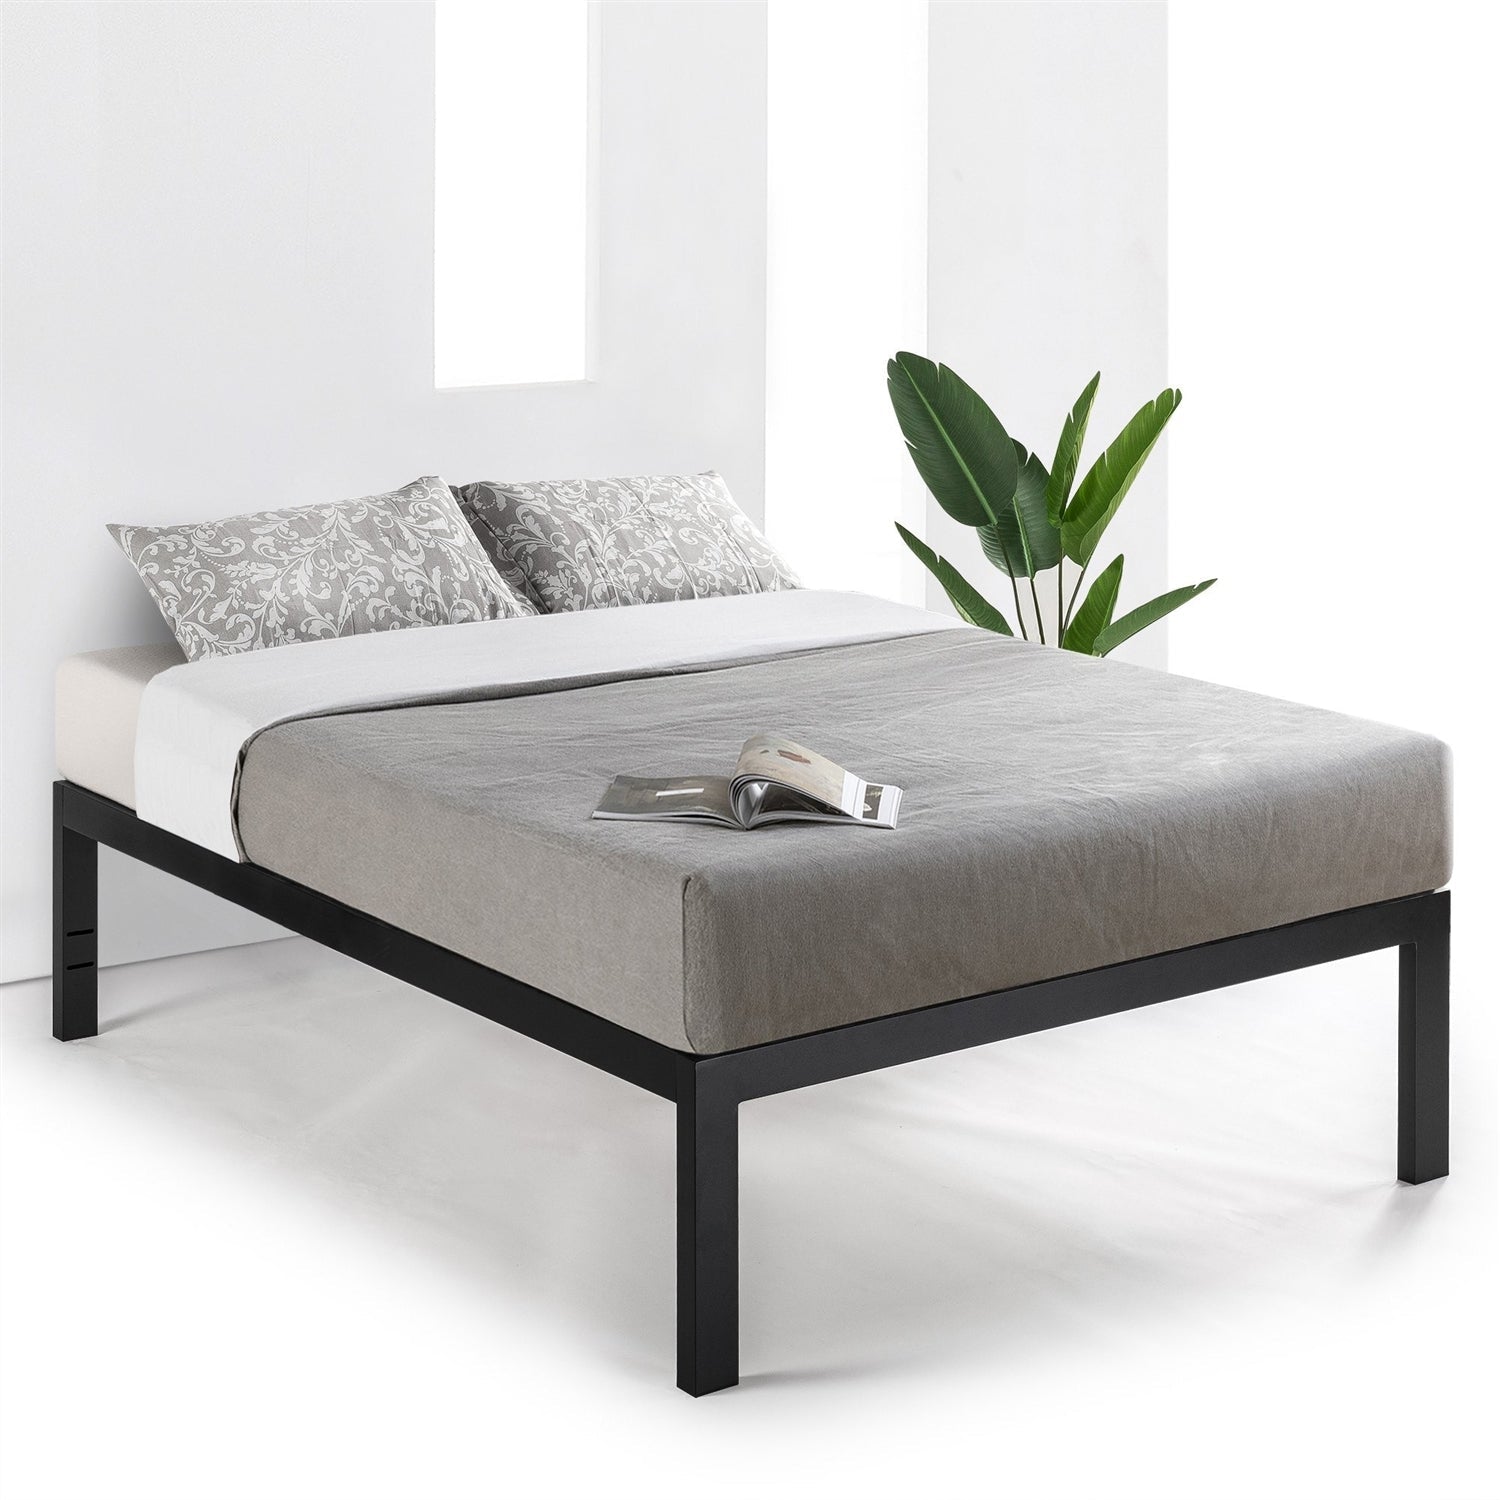 Bedroom > Bed Frames > Platform Beds - Queen 18 Inch Easy Assemble Metal Platform Bed Frame With Wood Slats